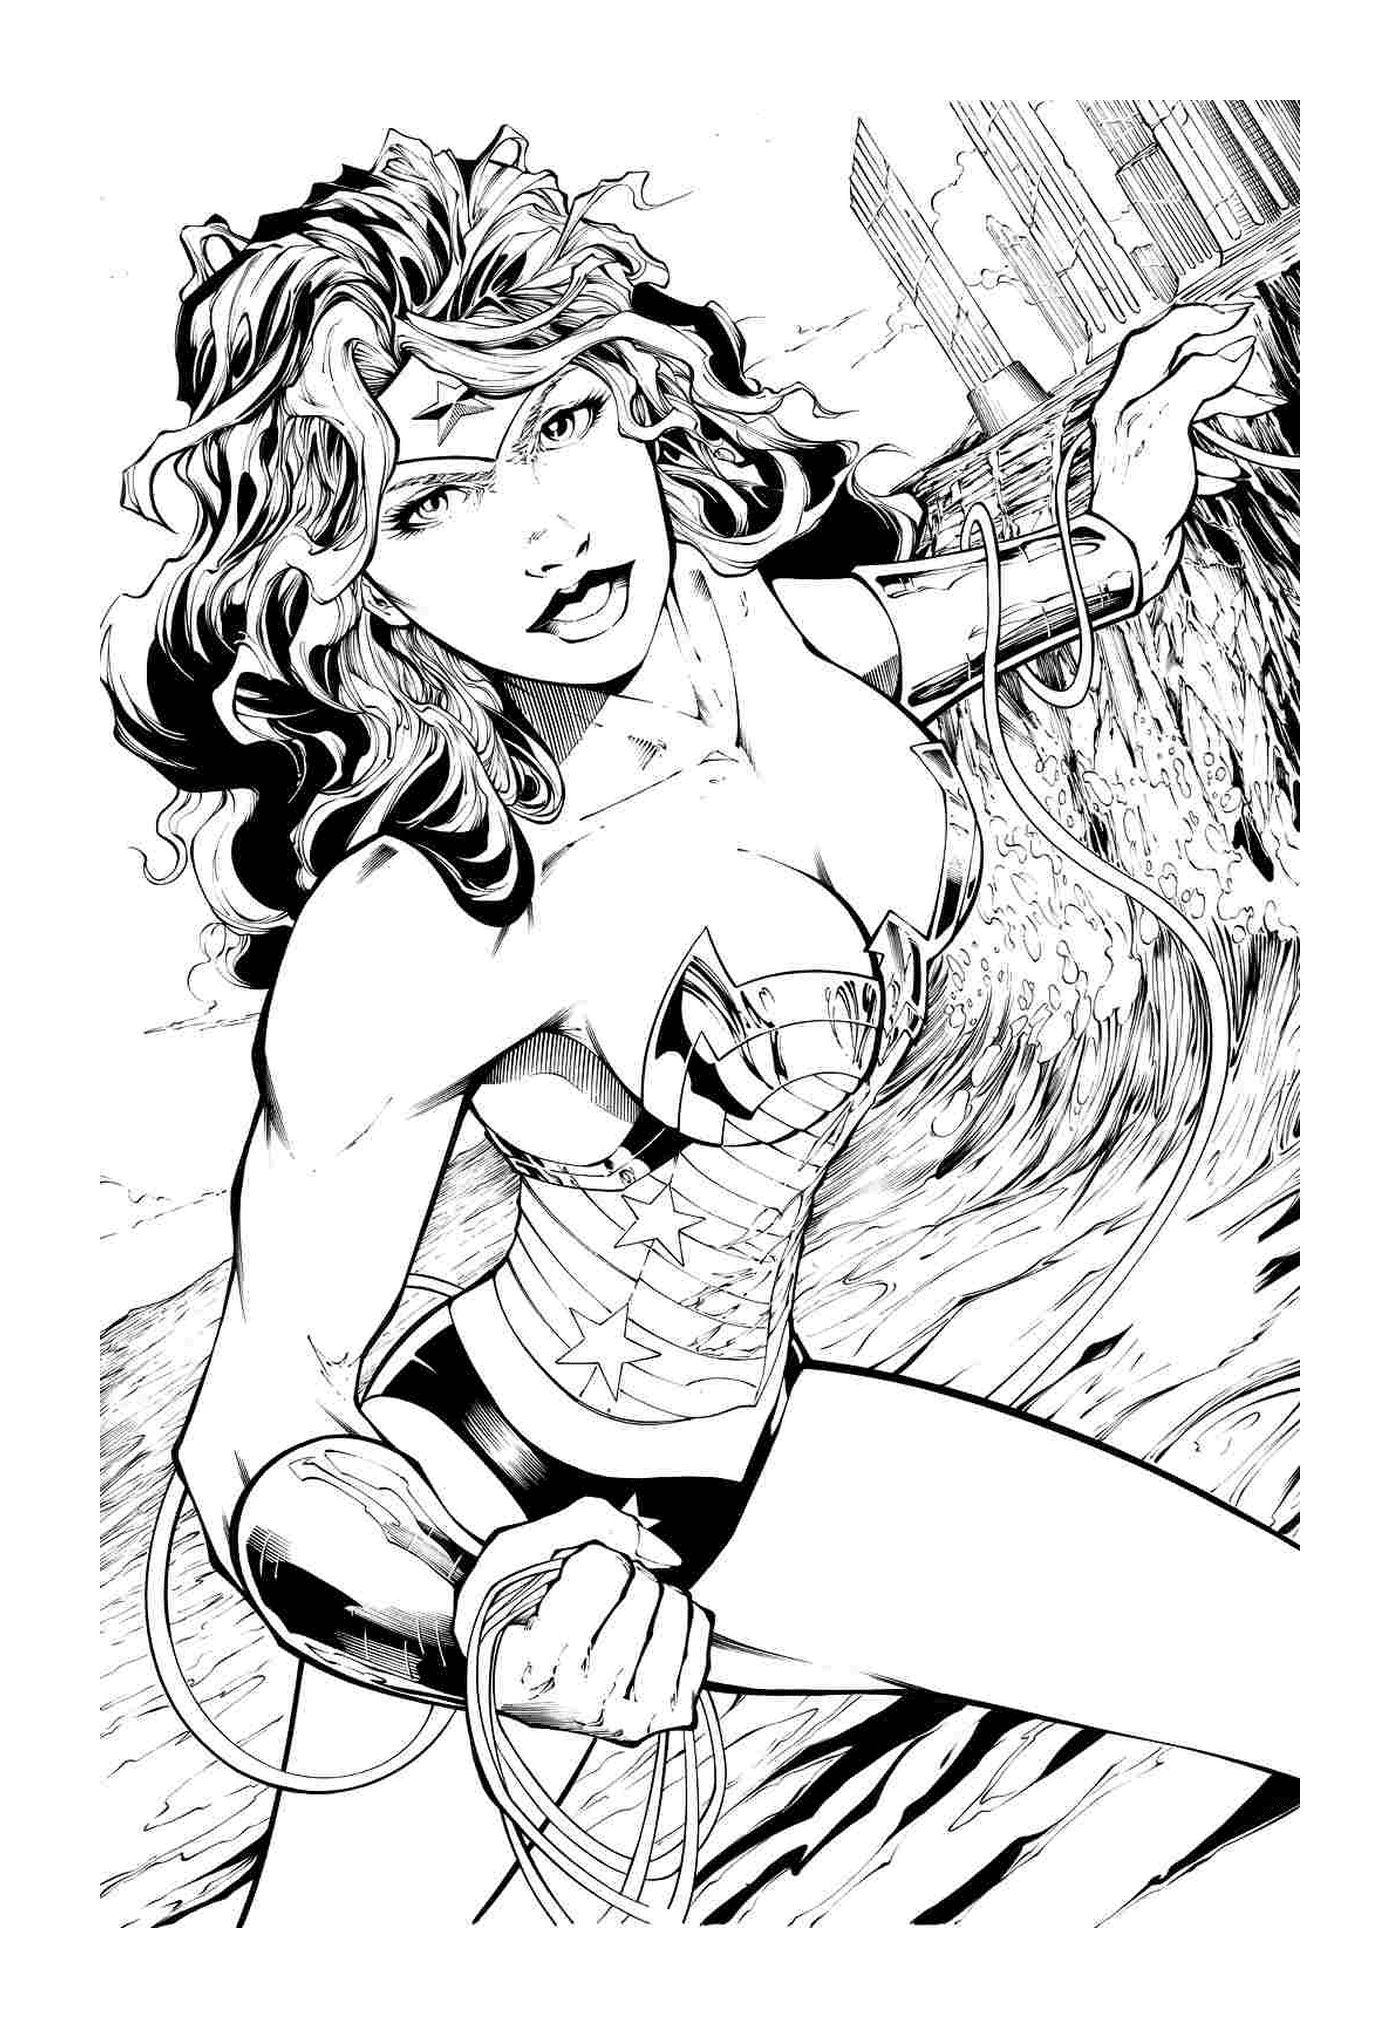   Wonder Woman adulte au combat 